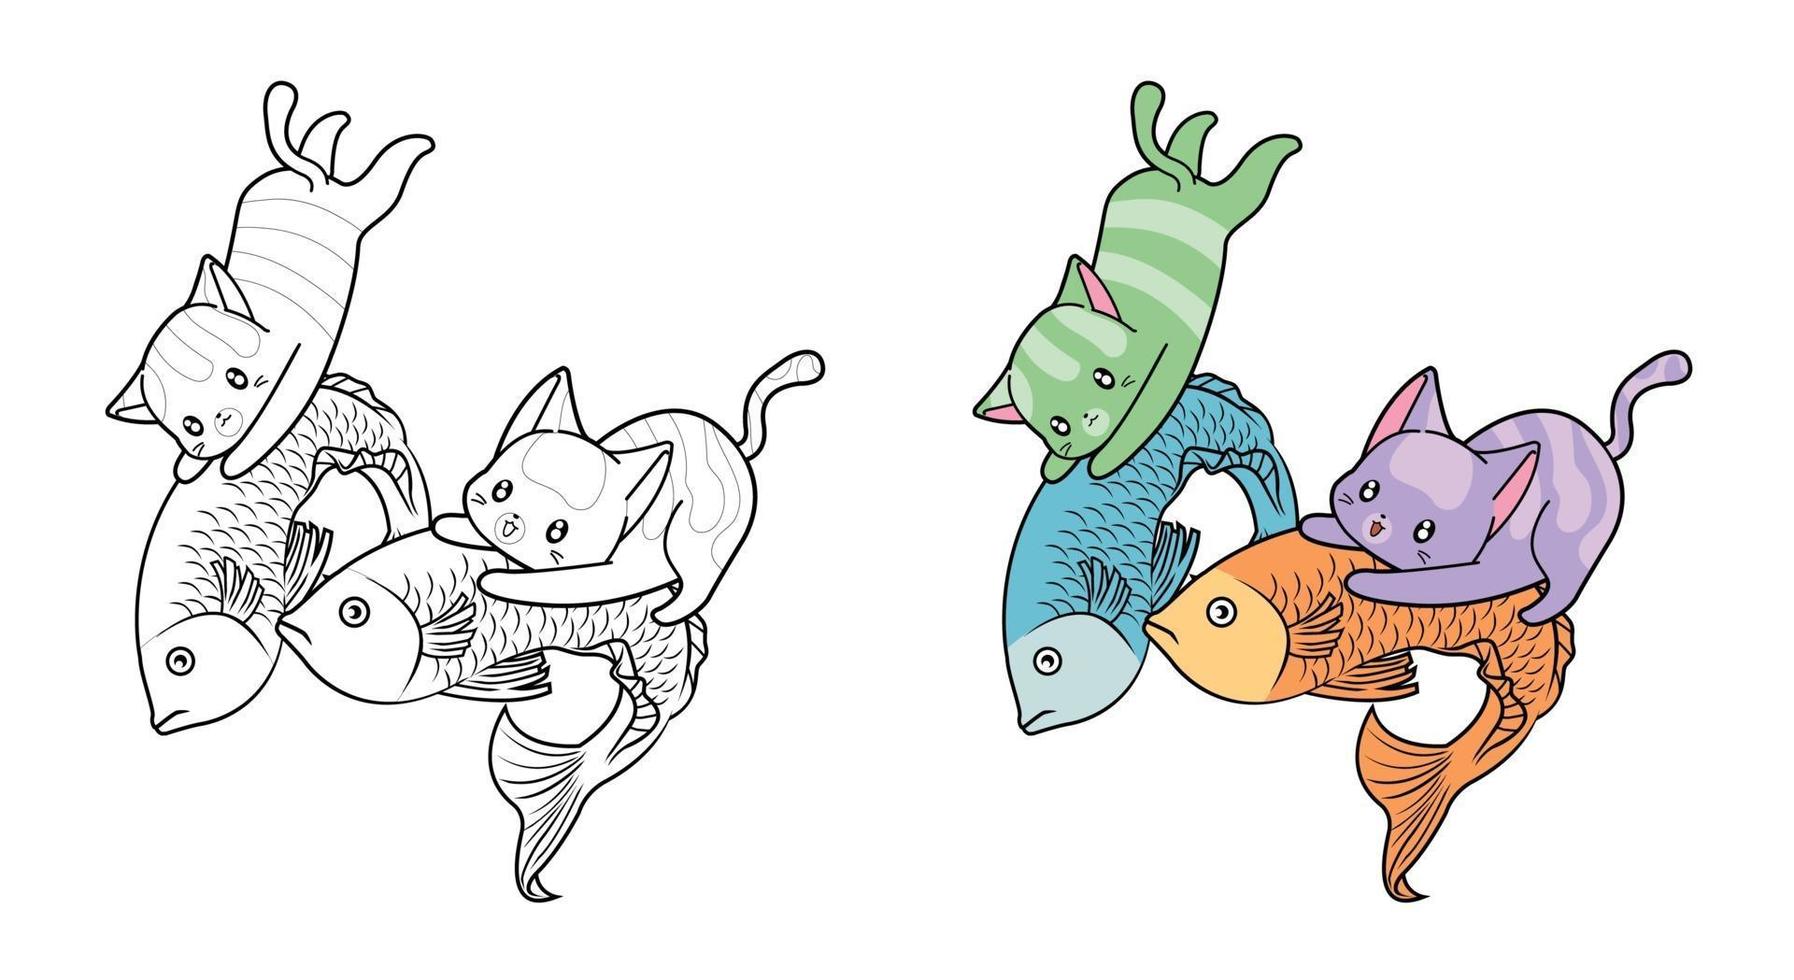 Les chats mignons attrapent des poissons, coloriage de dessin animé pour les enfants vecteur